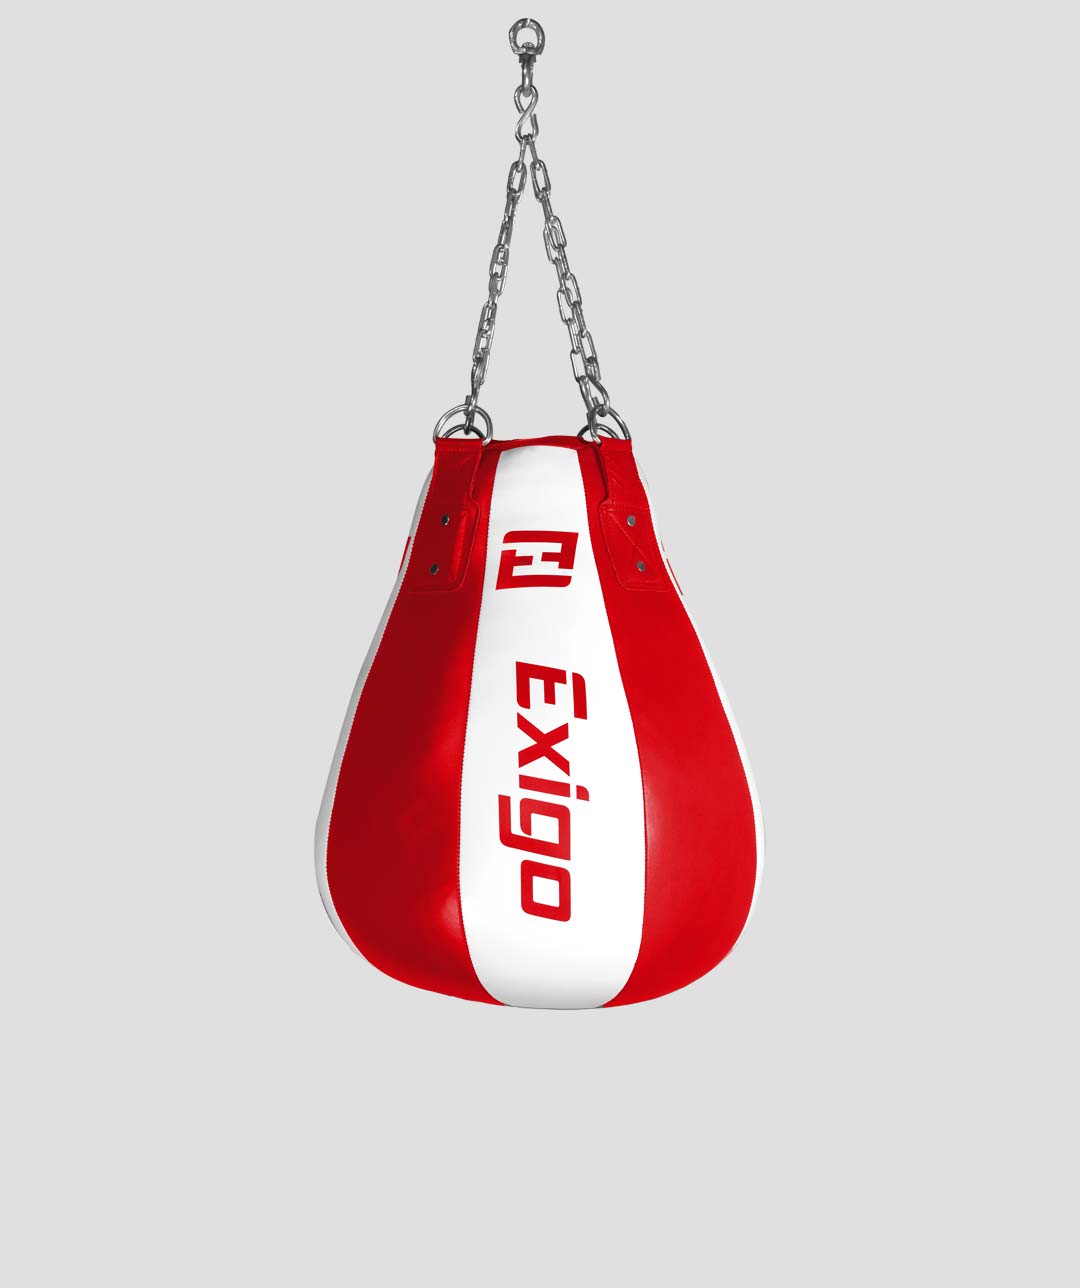 Exigo Classic Leather Maize Bag - Red/White